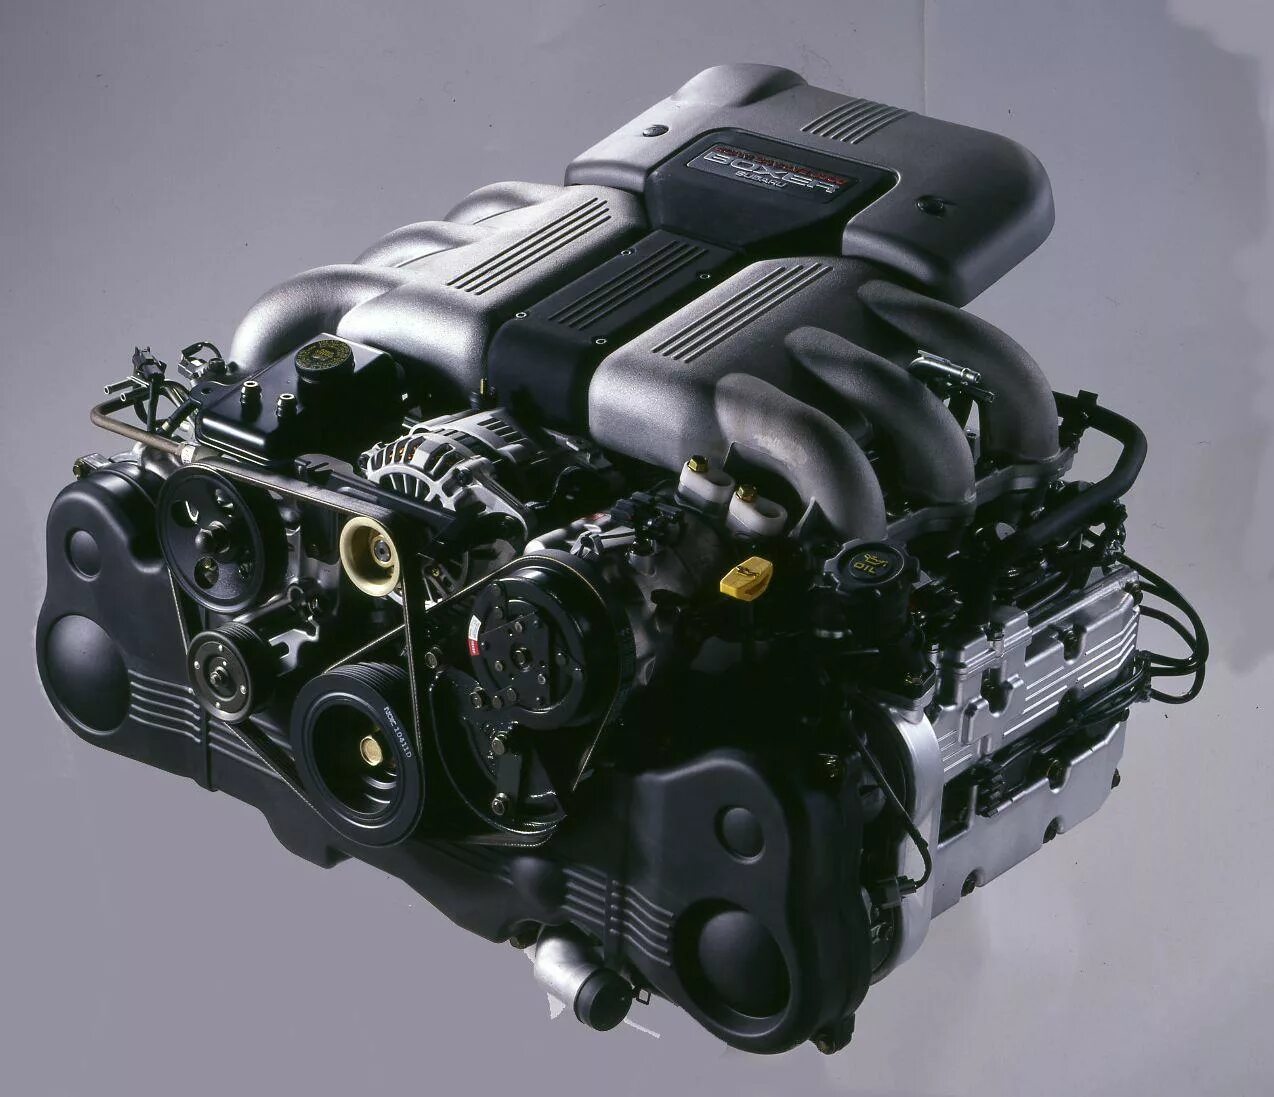 Двигатель Boxer Subaru. 6 Цилиндровый двигатель Субару. Оппозитный двигатель Субару. Subaru Boxer 6. Flat engine